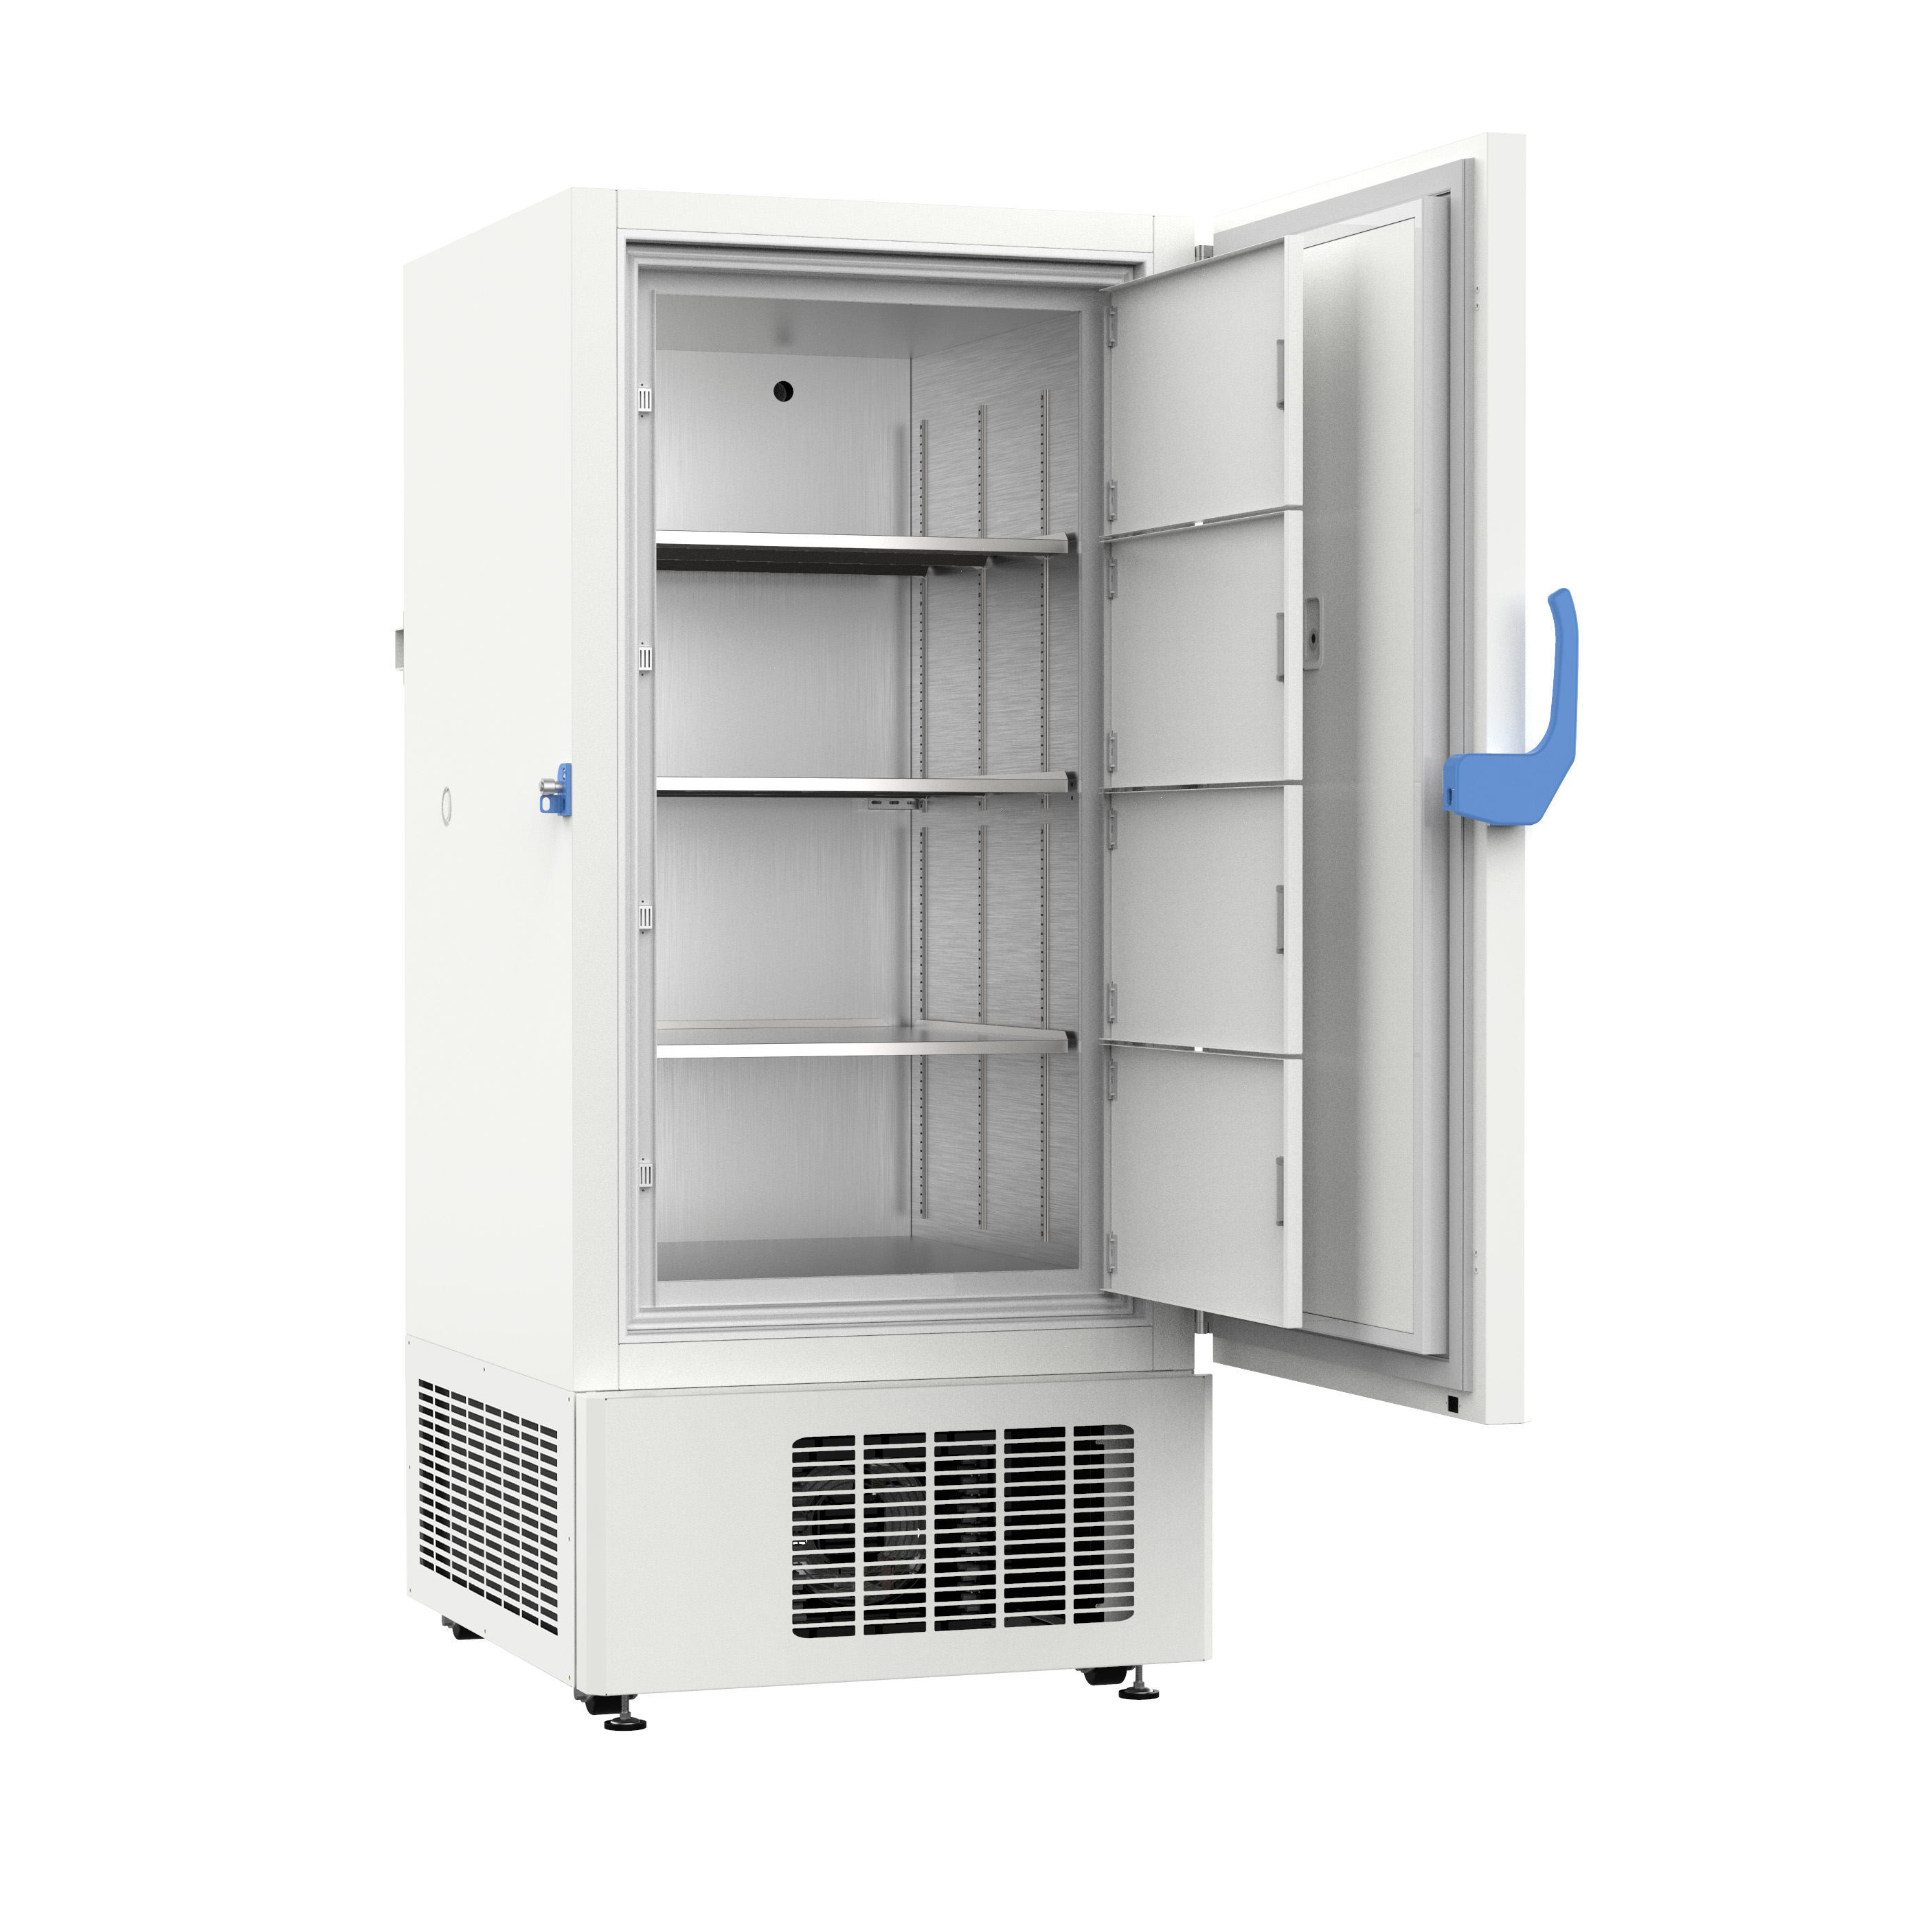  MS-UF500 -40°C Ultra-low Temperature Freezer